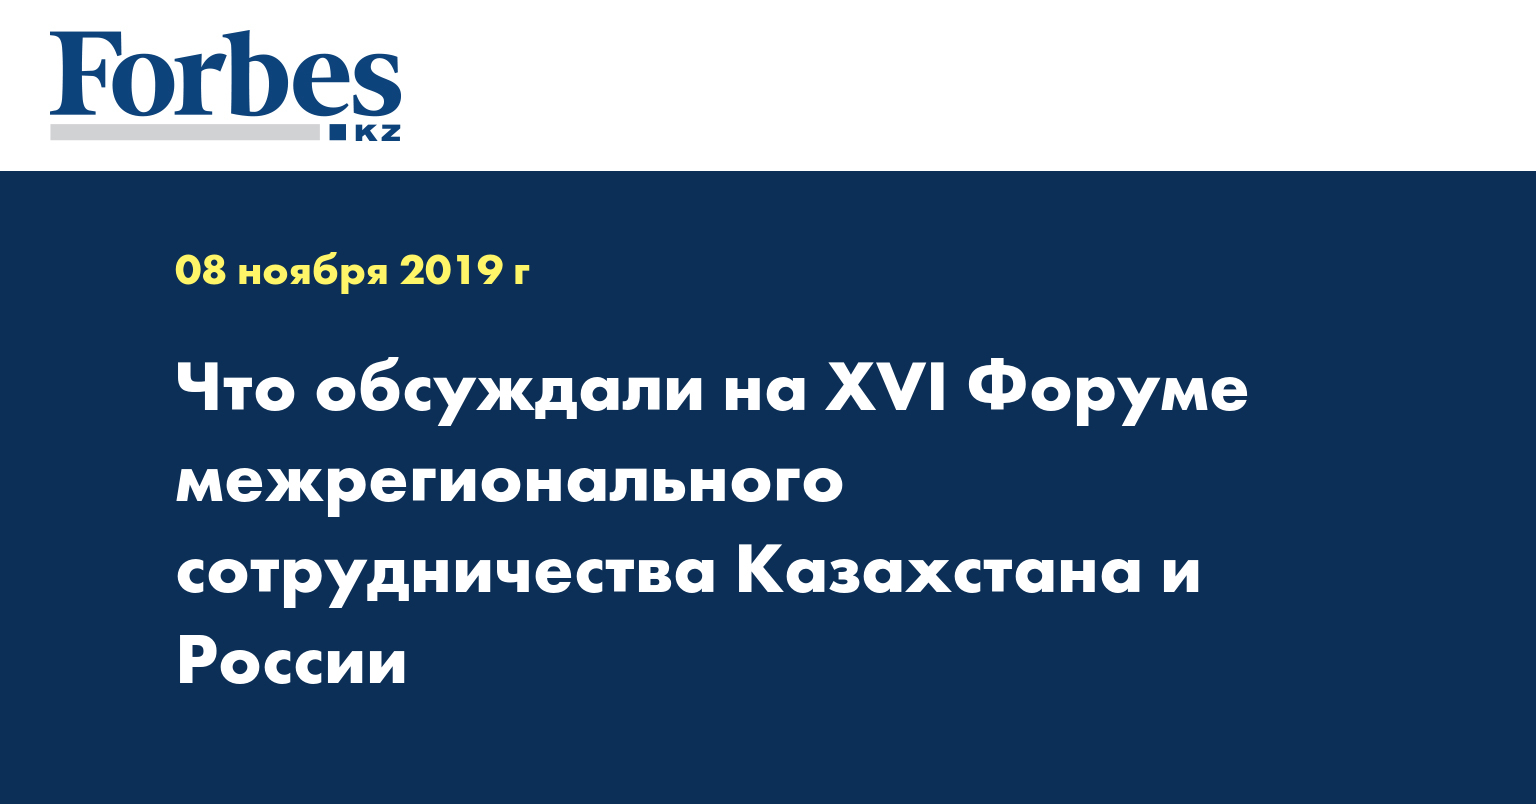 Что обсуждали на XVI Форуме межрегионального сотрудничества Казахстана и России